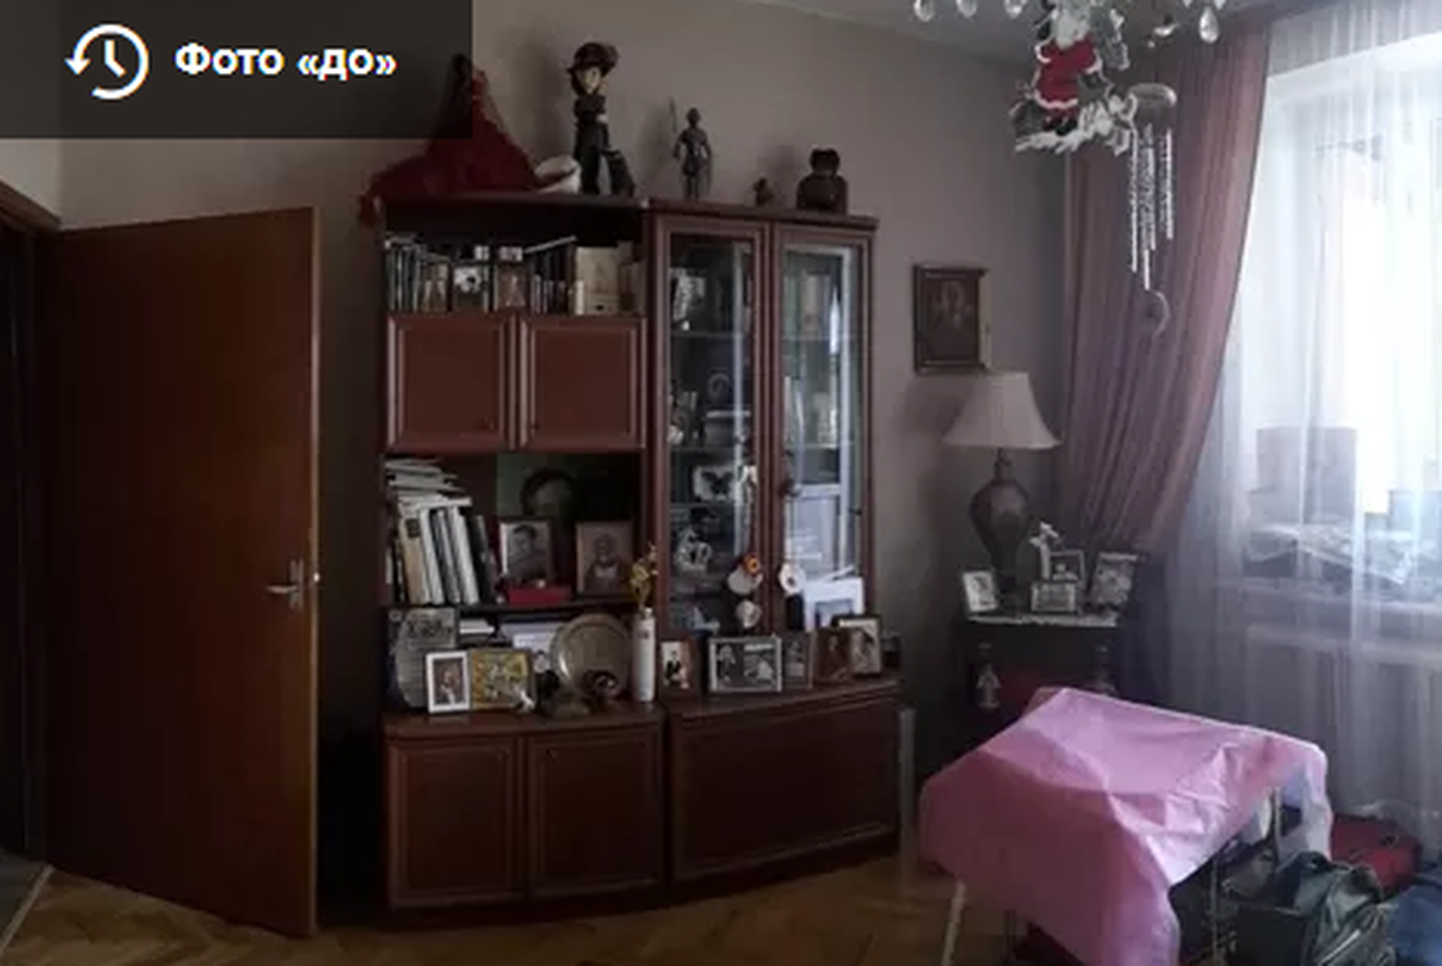 Комната из квартиры Людмилы Чурсиной до ремонта.